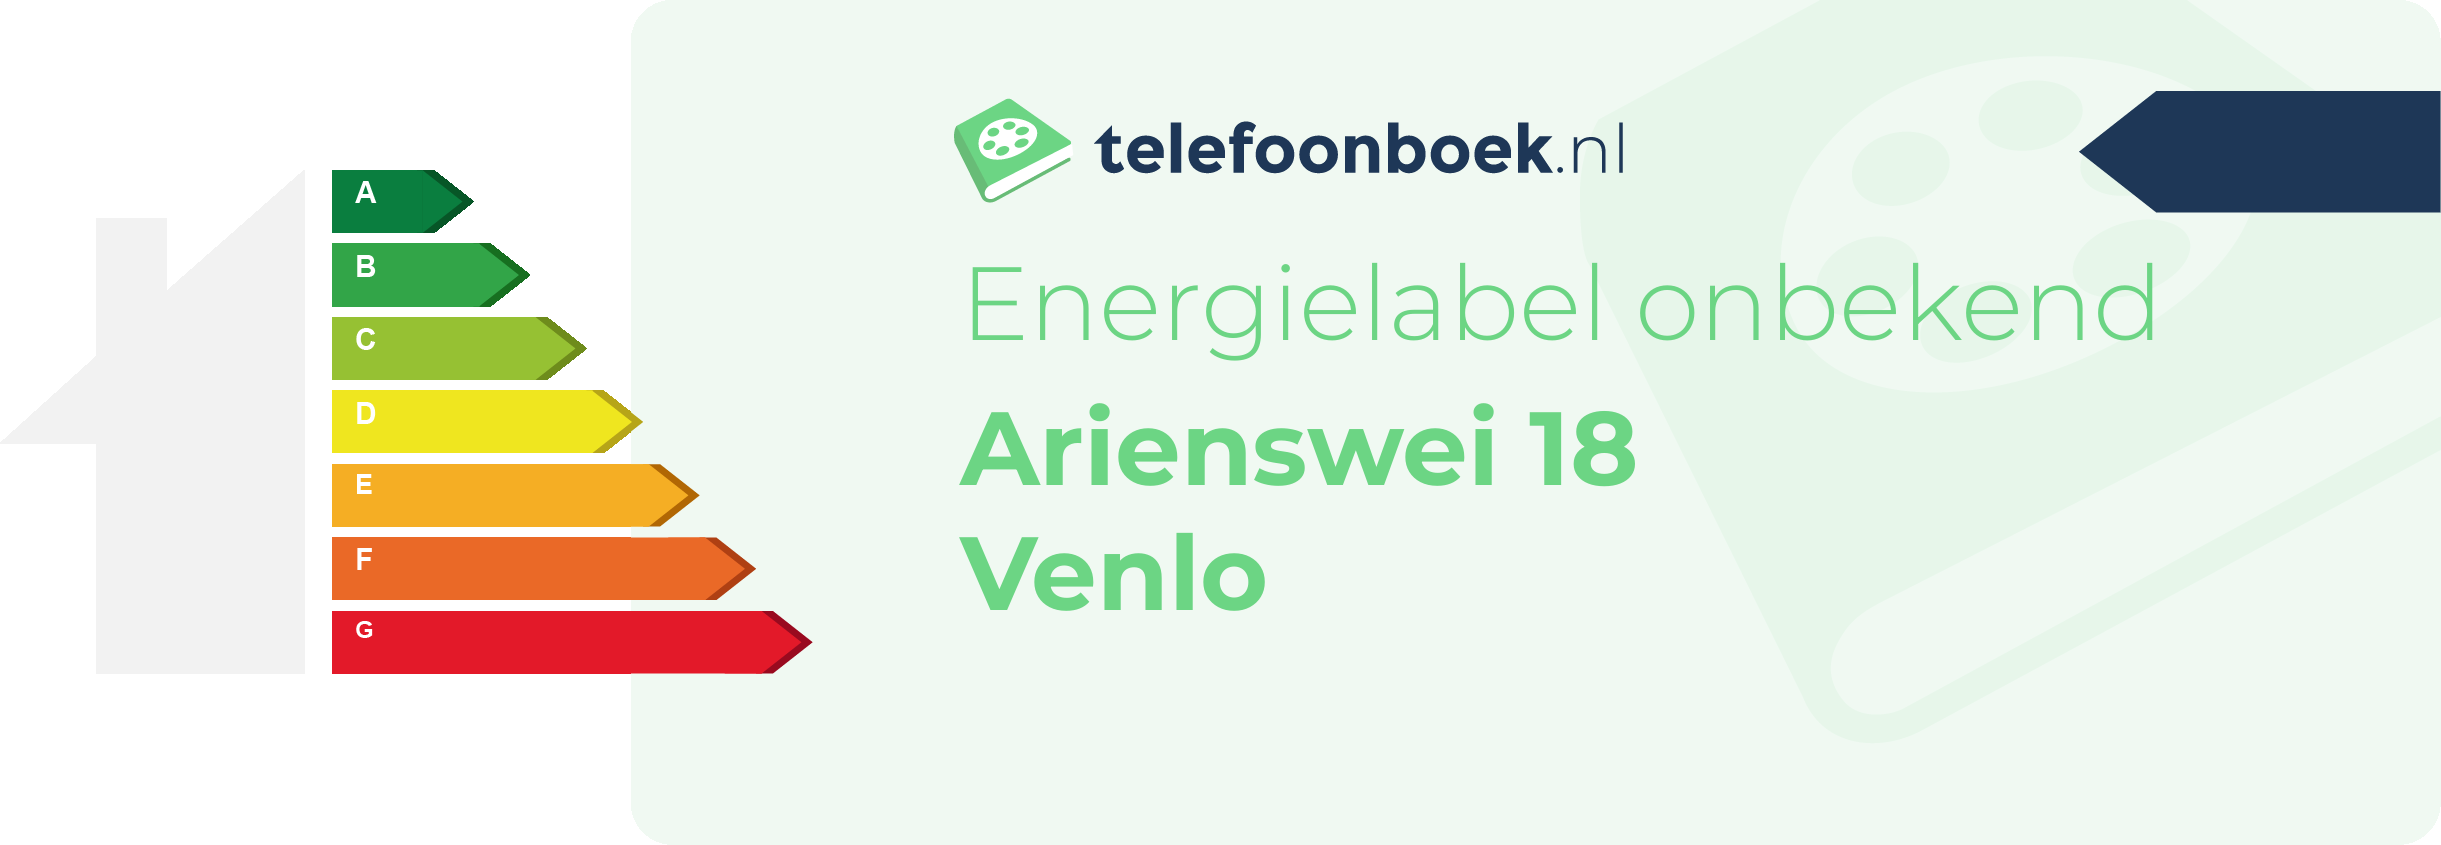 Energielabel Arienswei 18 Venlo